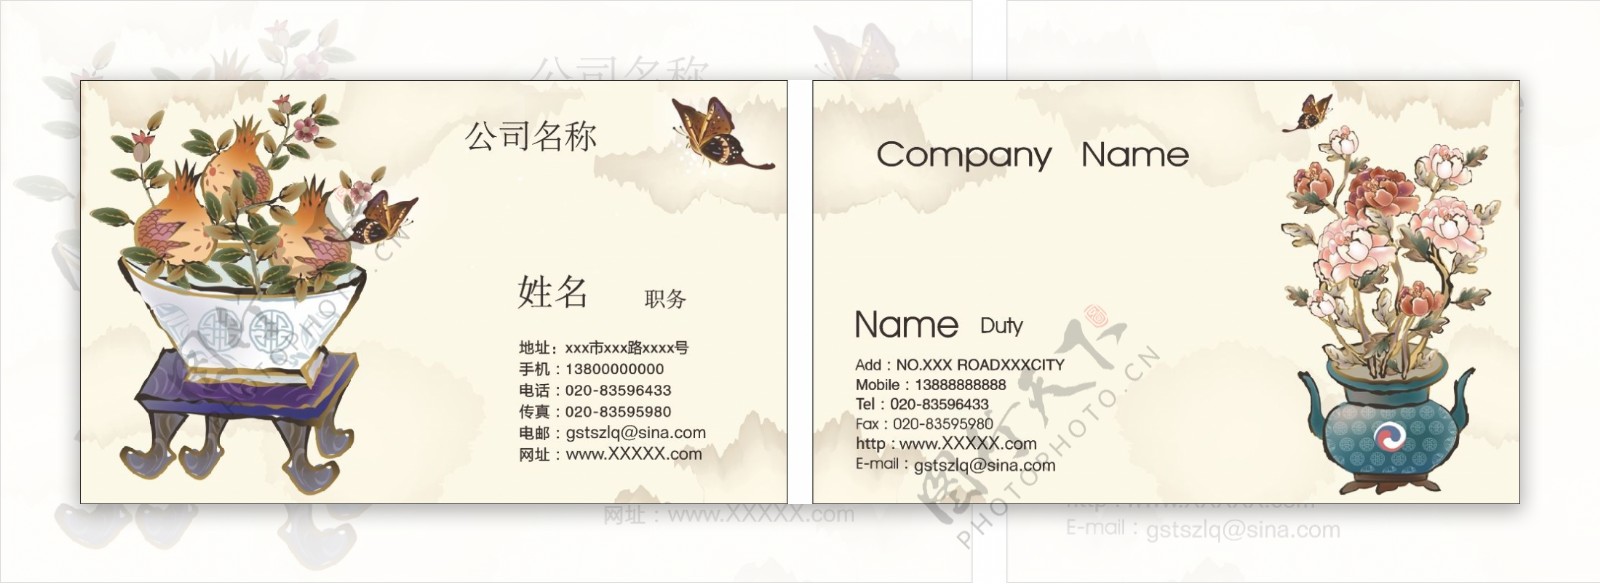 中国风传统企业名片设计